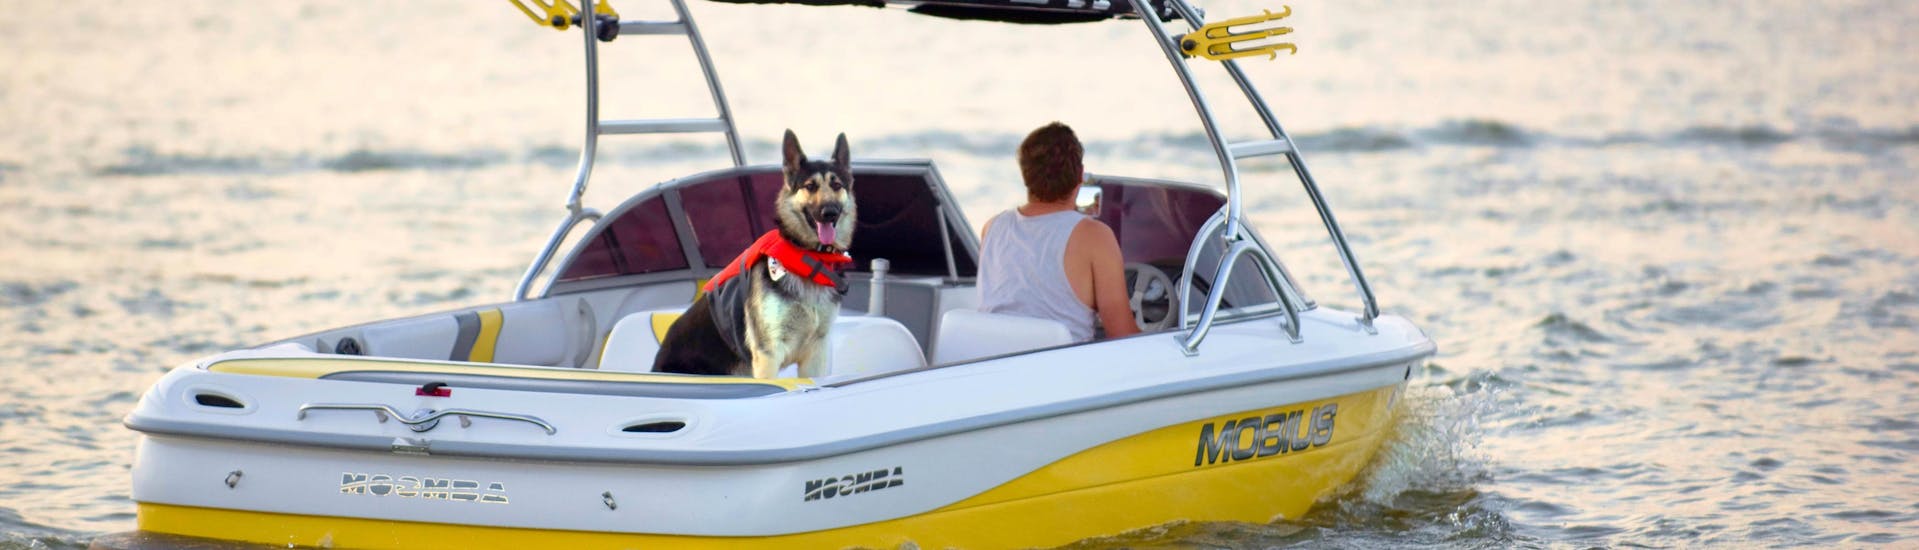 Una persona che si diverte con il suo cane durante un'attività di noleggio di barche con cani e animali domestici.